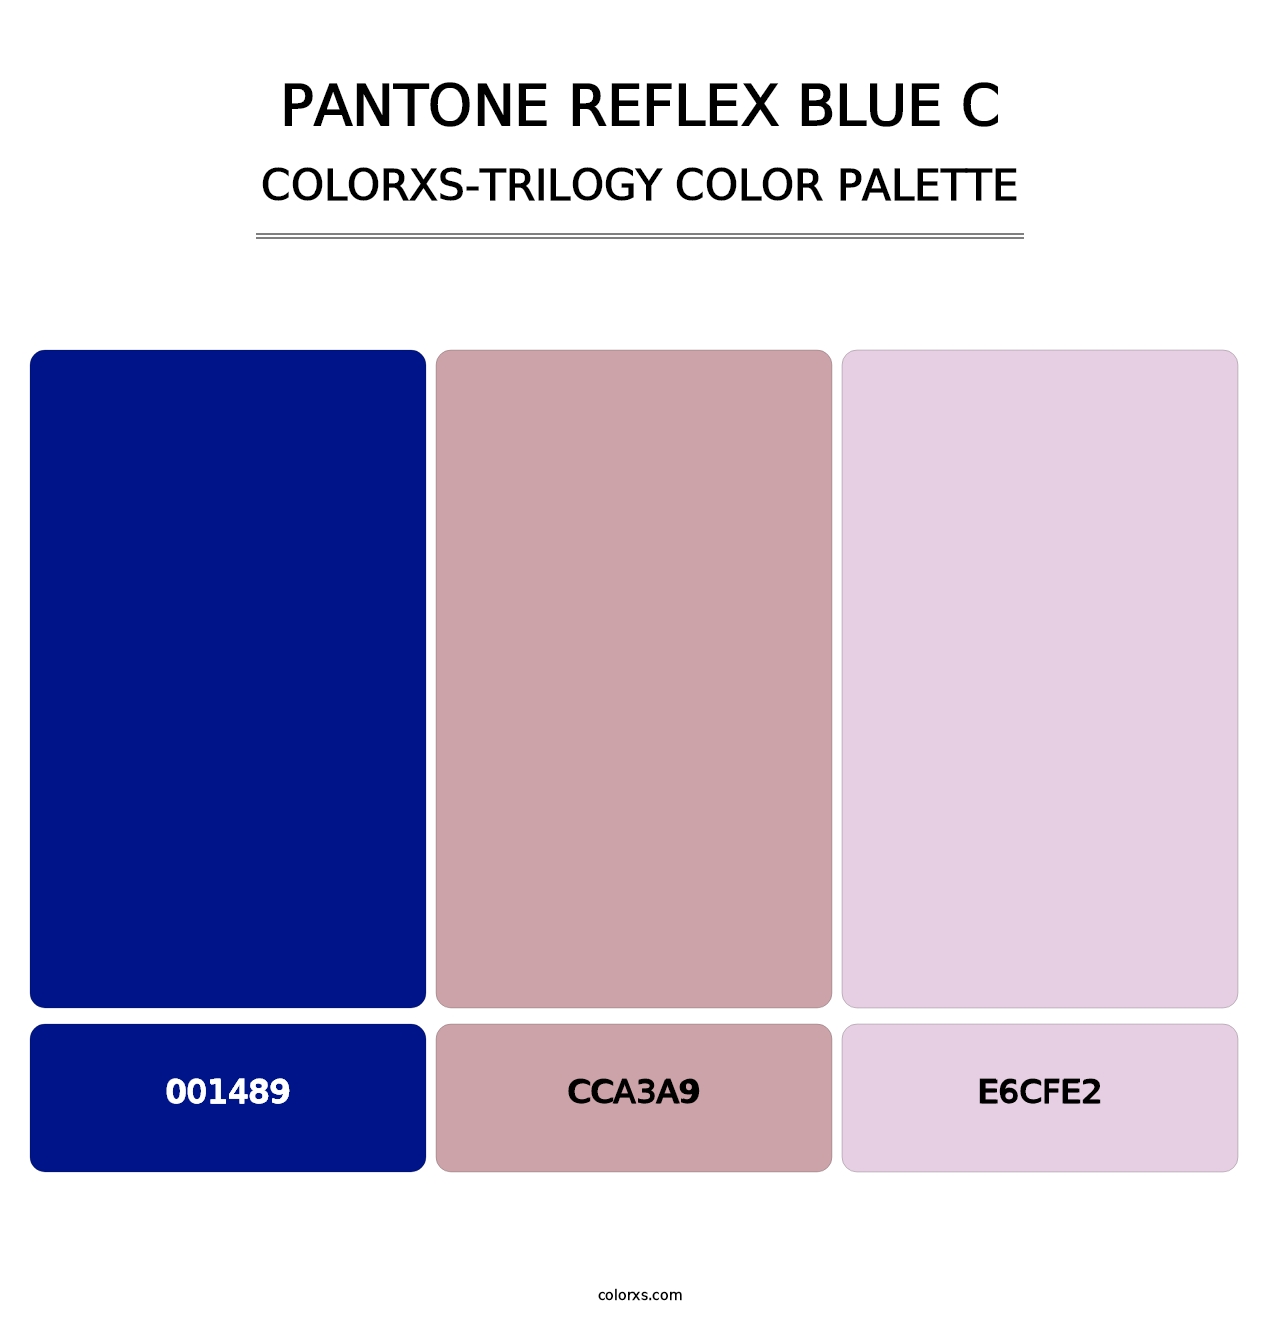 PANTONE Reflex Blue C - Colorxs Trilogy Palette